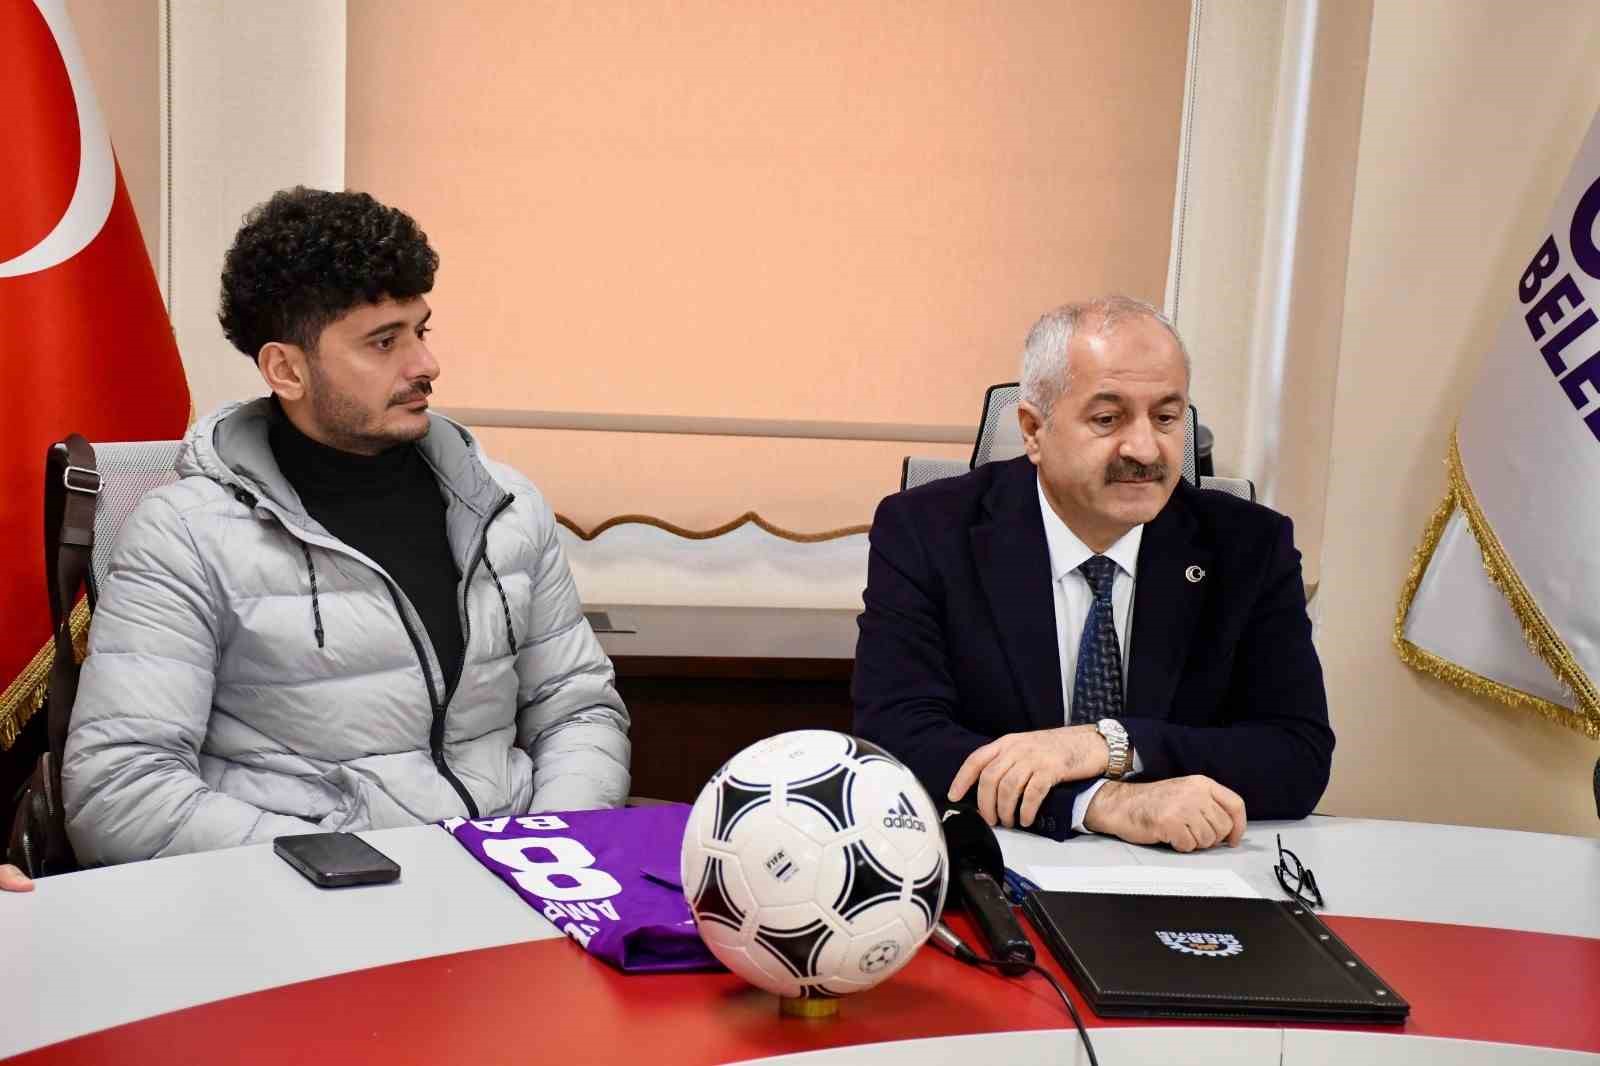 Gebze Belediyesi Ampute Futbol Takımı, Barış Telli ile sözleşme imzaladı